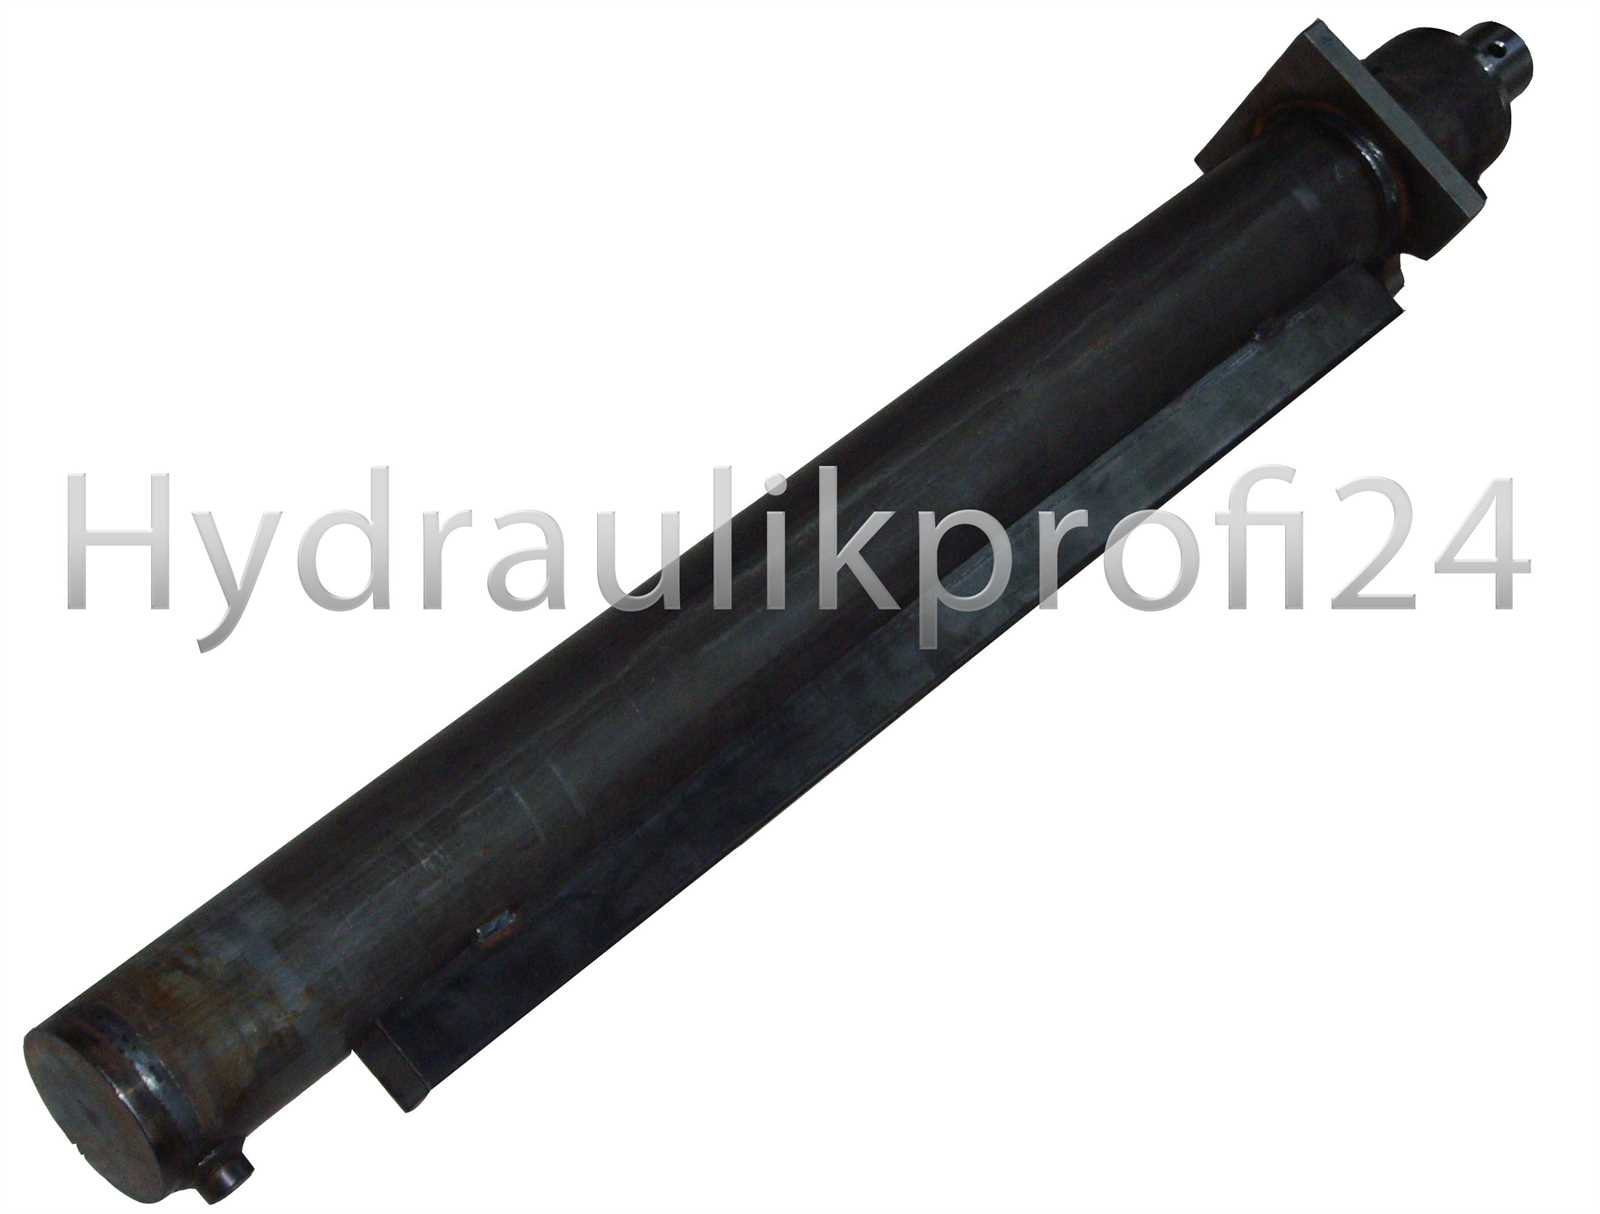 Hydraulikprofi24 - Hydraulikzylinder doppeltwirkend 60-100-1500